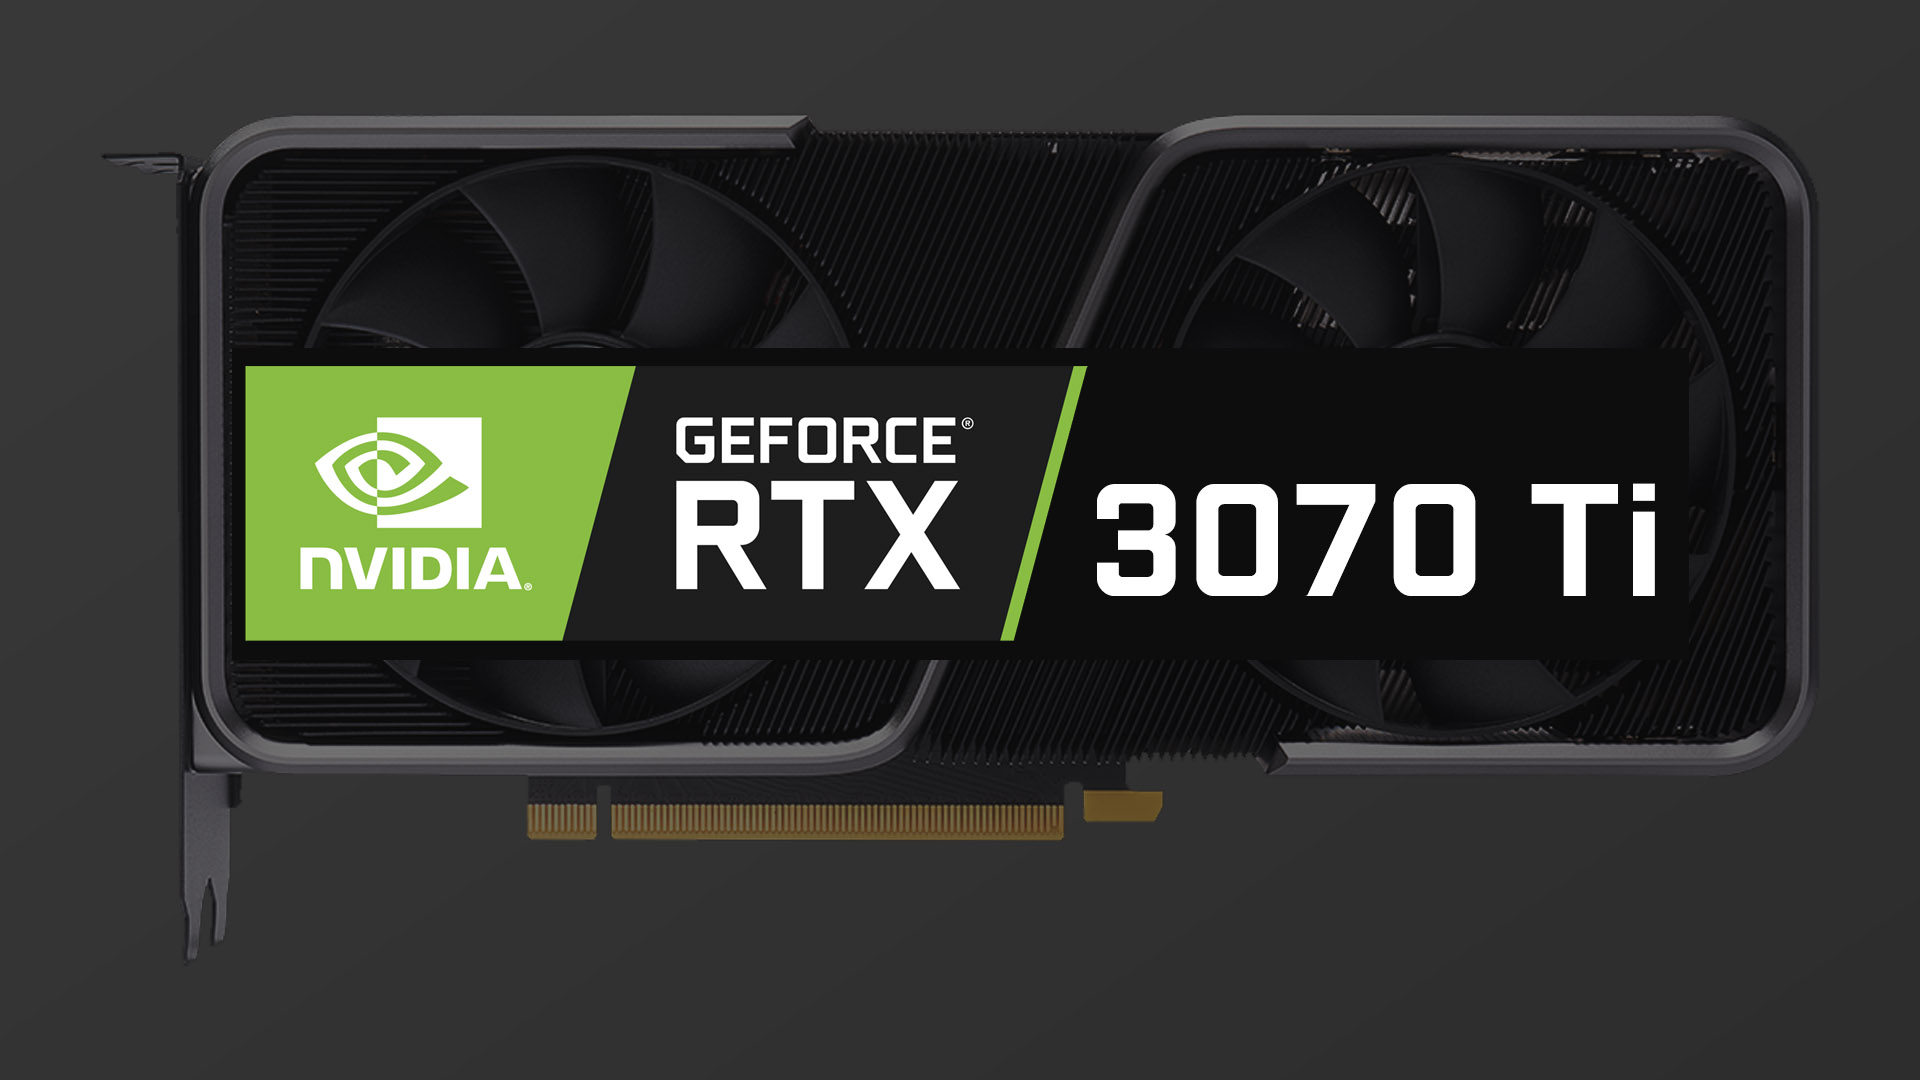 GeForce RTX 3070 TiではVRAMが8GBと16GB版が用意される模様